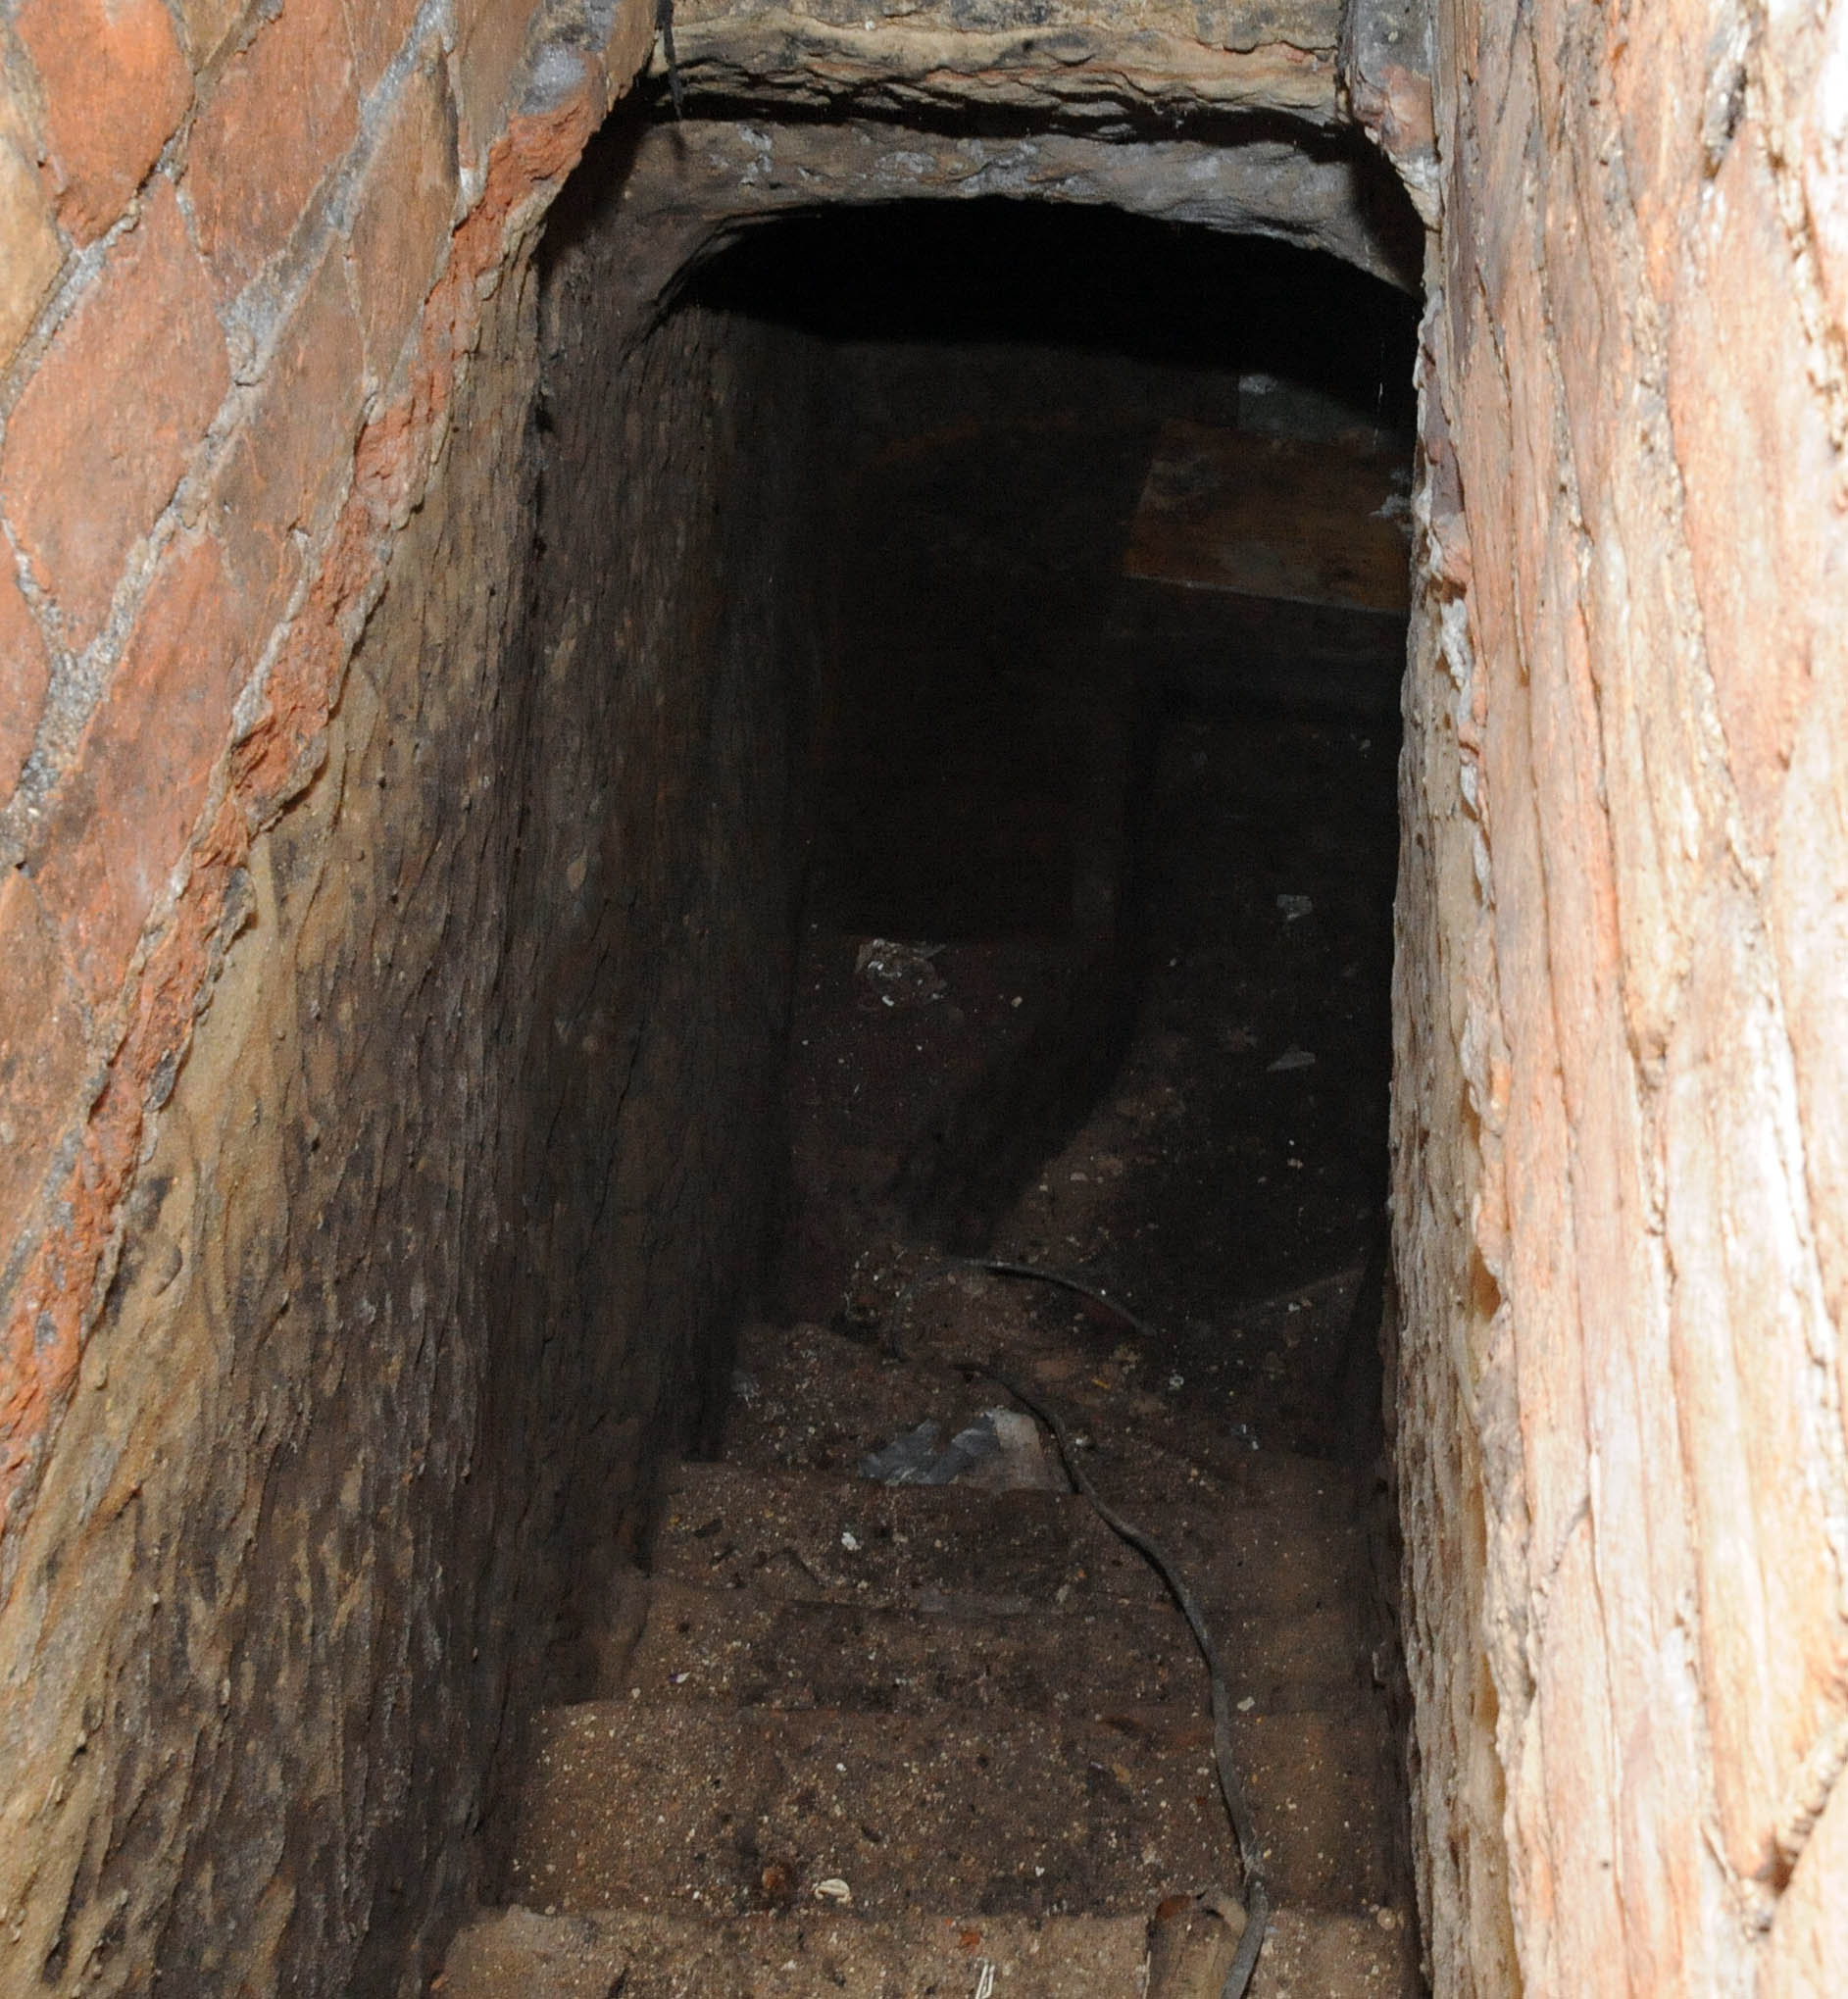 Der geheime Keller in Nottingham wurde geöffnet, nachdem Arbeiter gerufen wurden